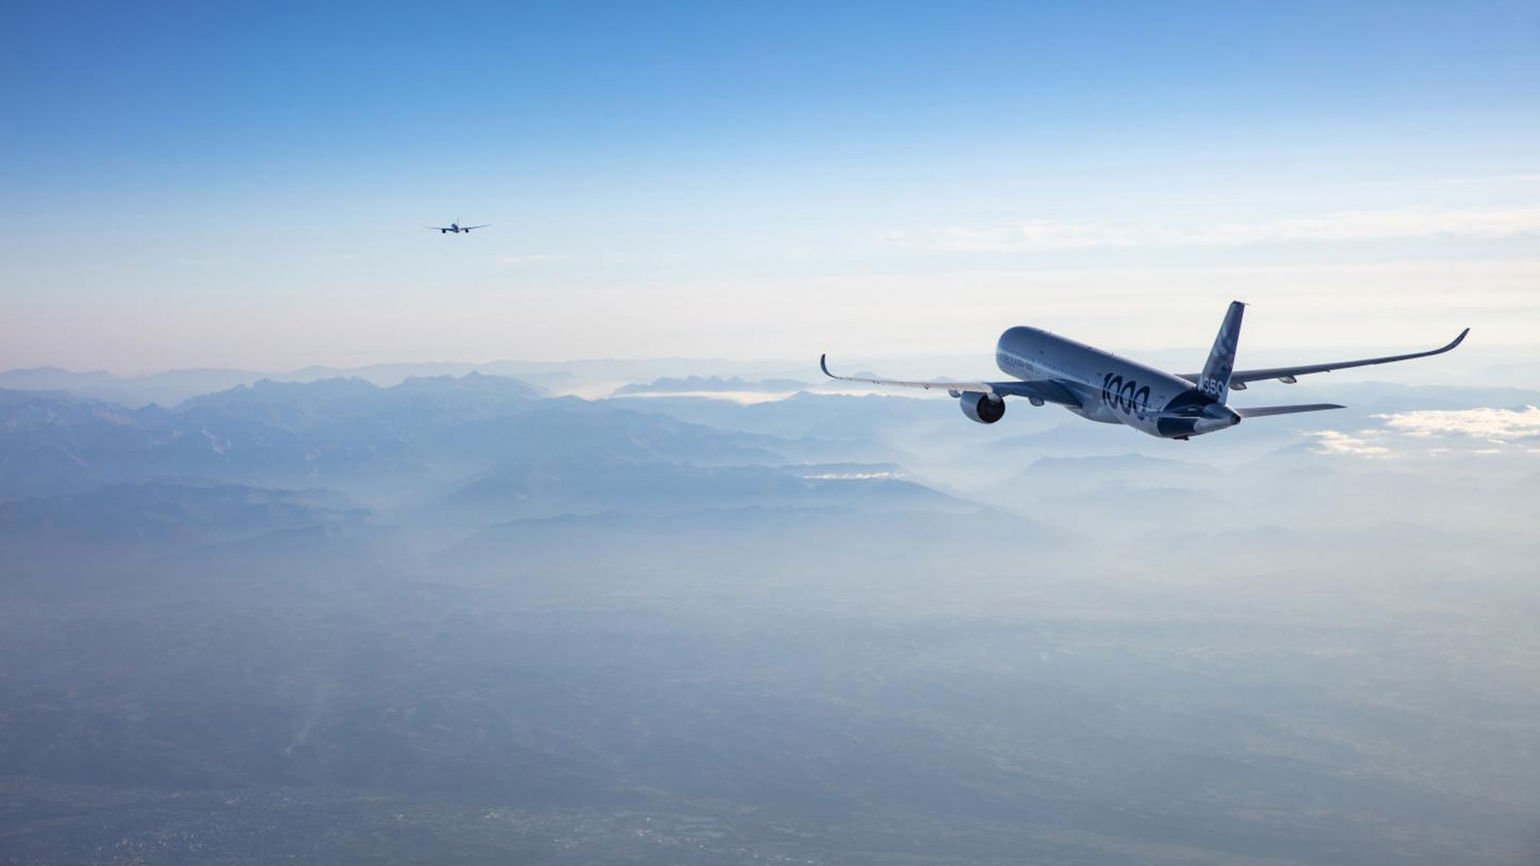 Airbus completes transatlantic fuel-saving formation flight